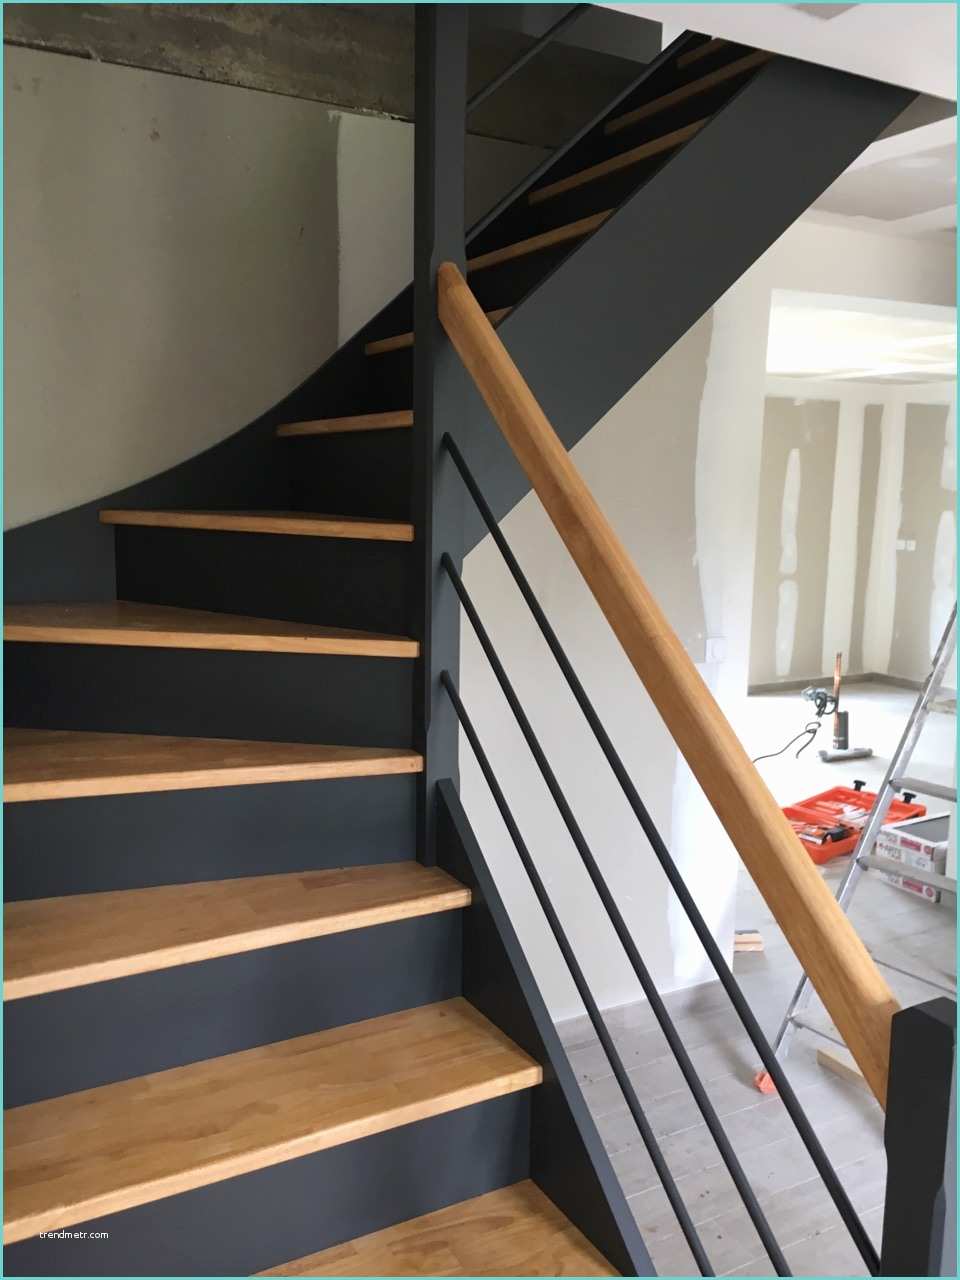 Escaliers Peints En Gris Escalier Personnalisé Peint Au Style Contemporain Indiustriel